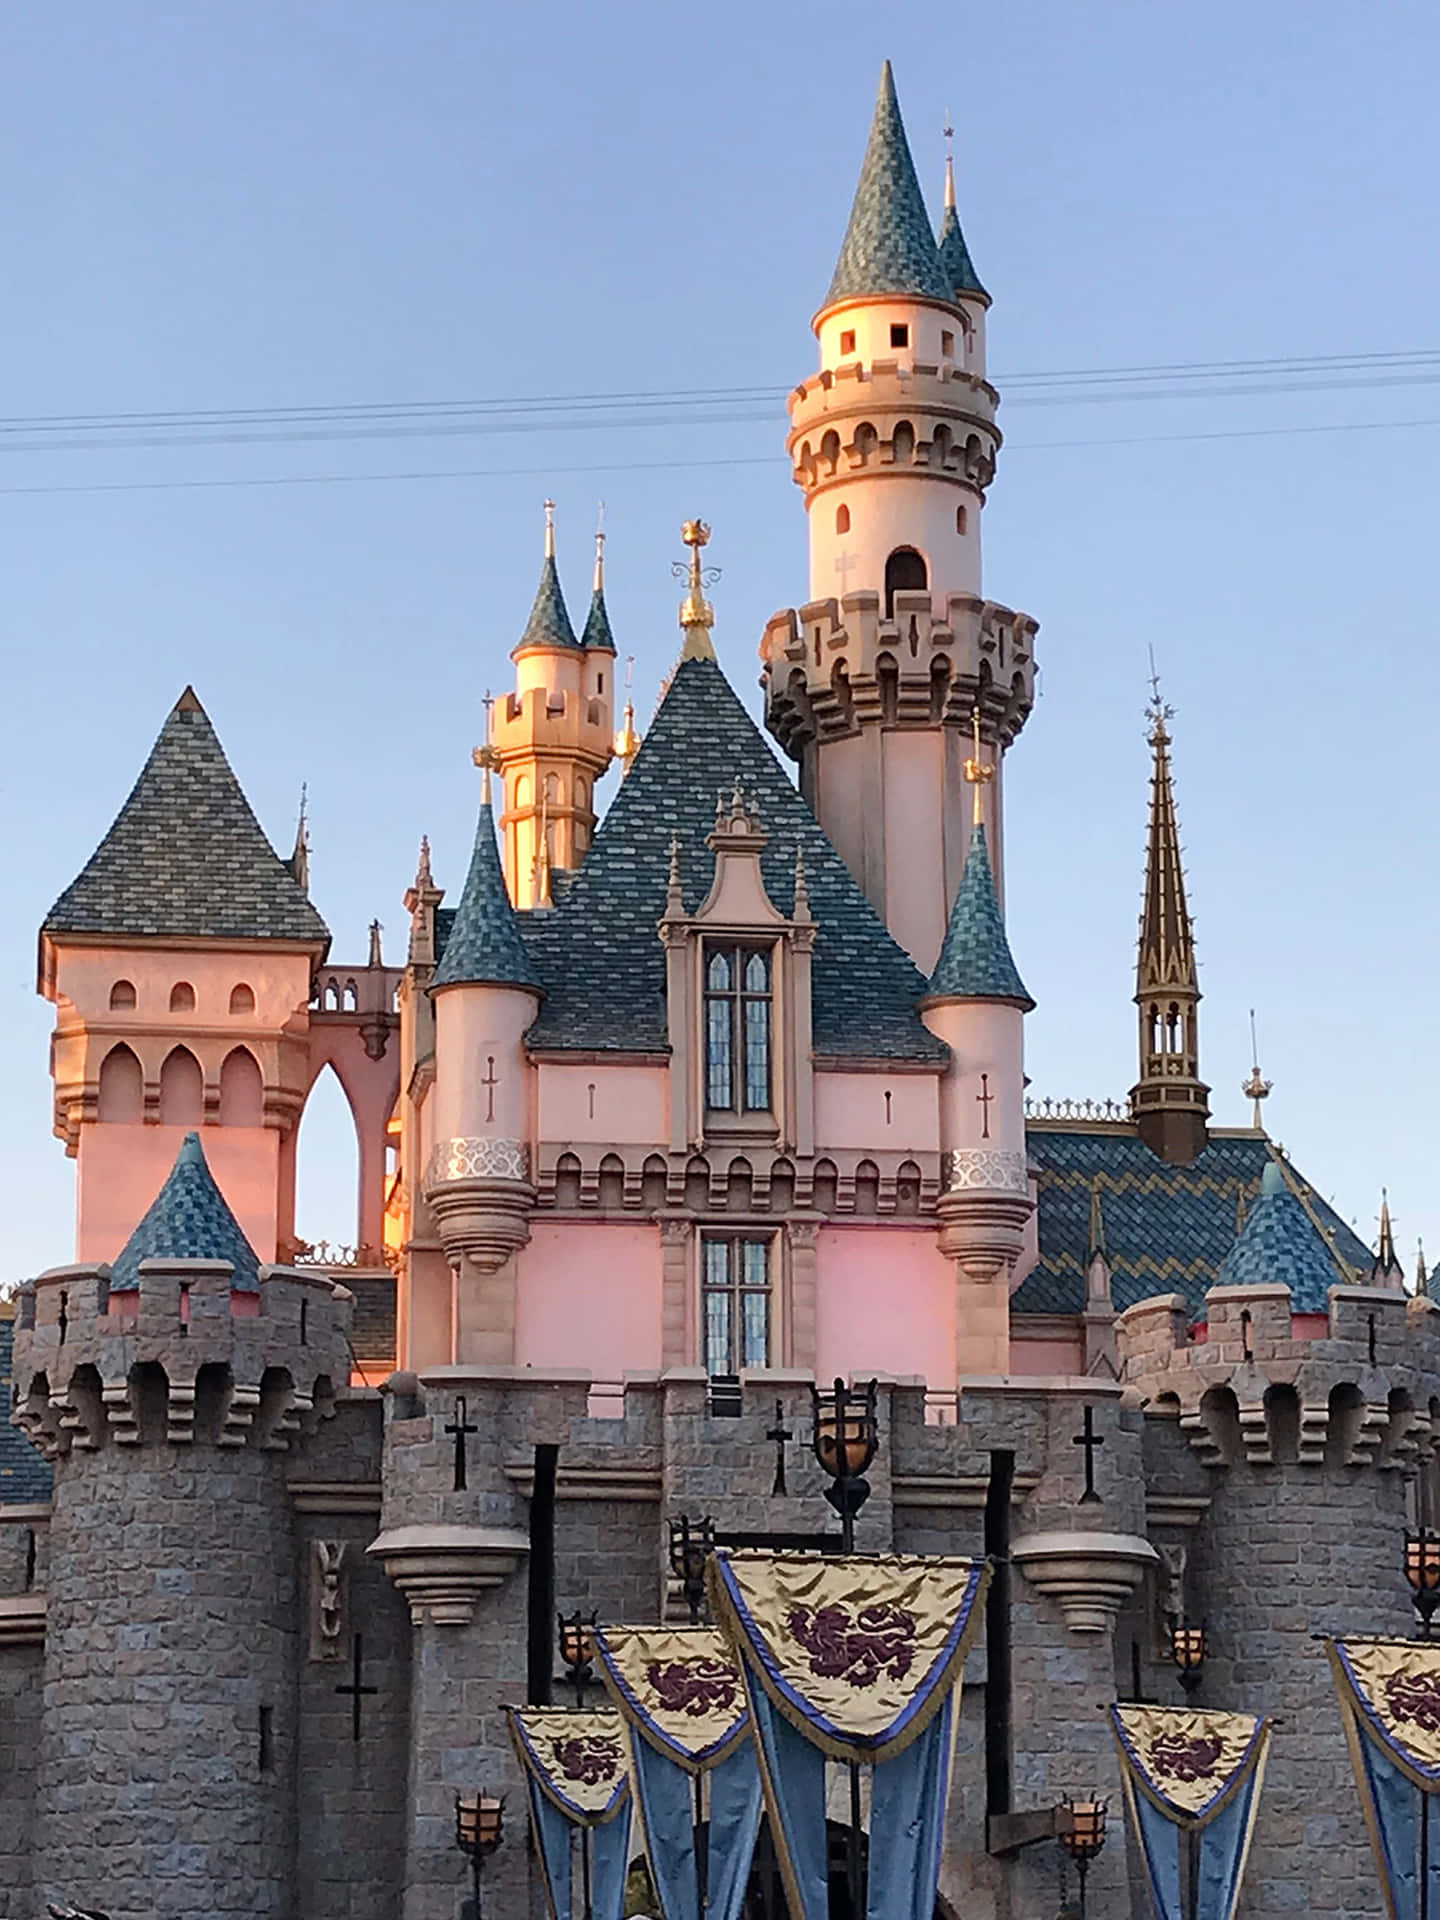 Billeder af Disneyland pynte tapetet.